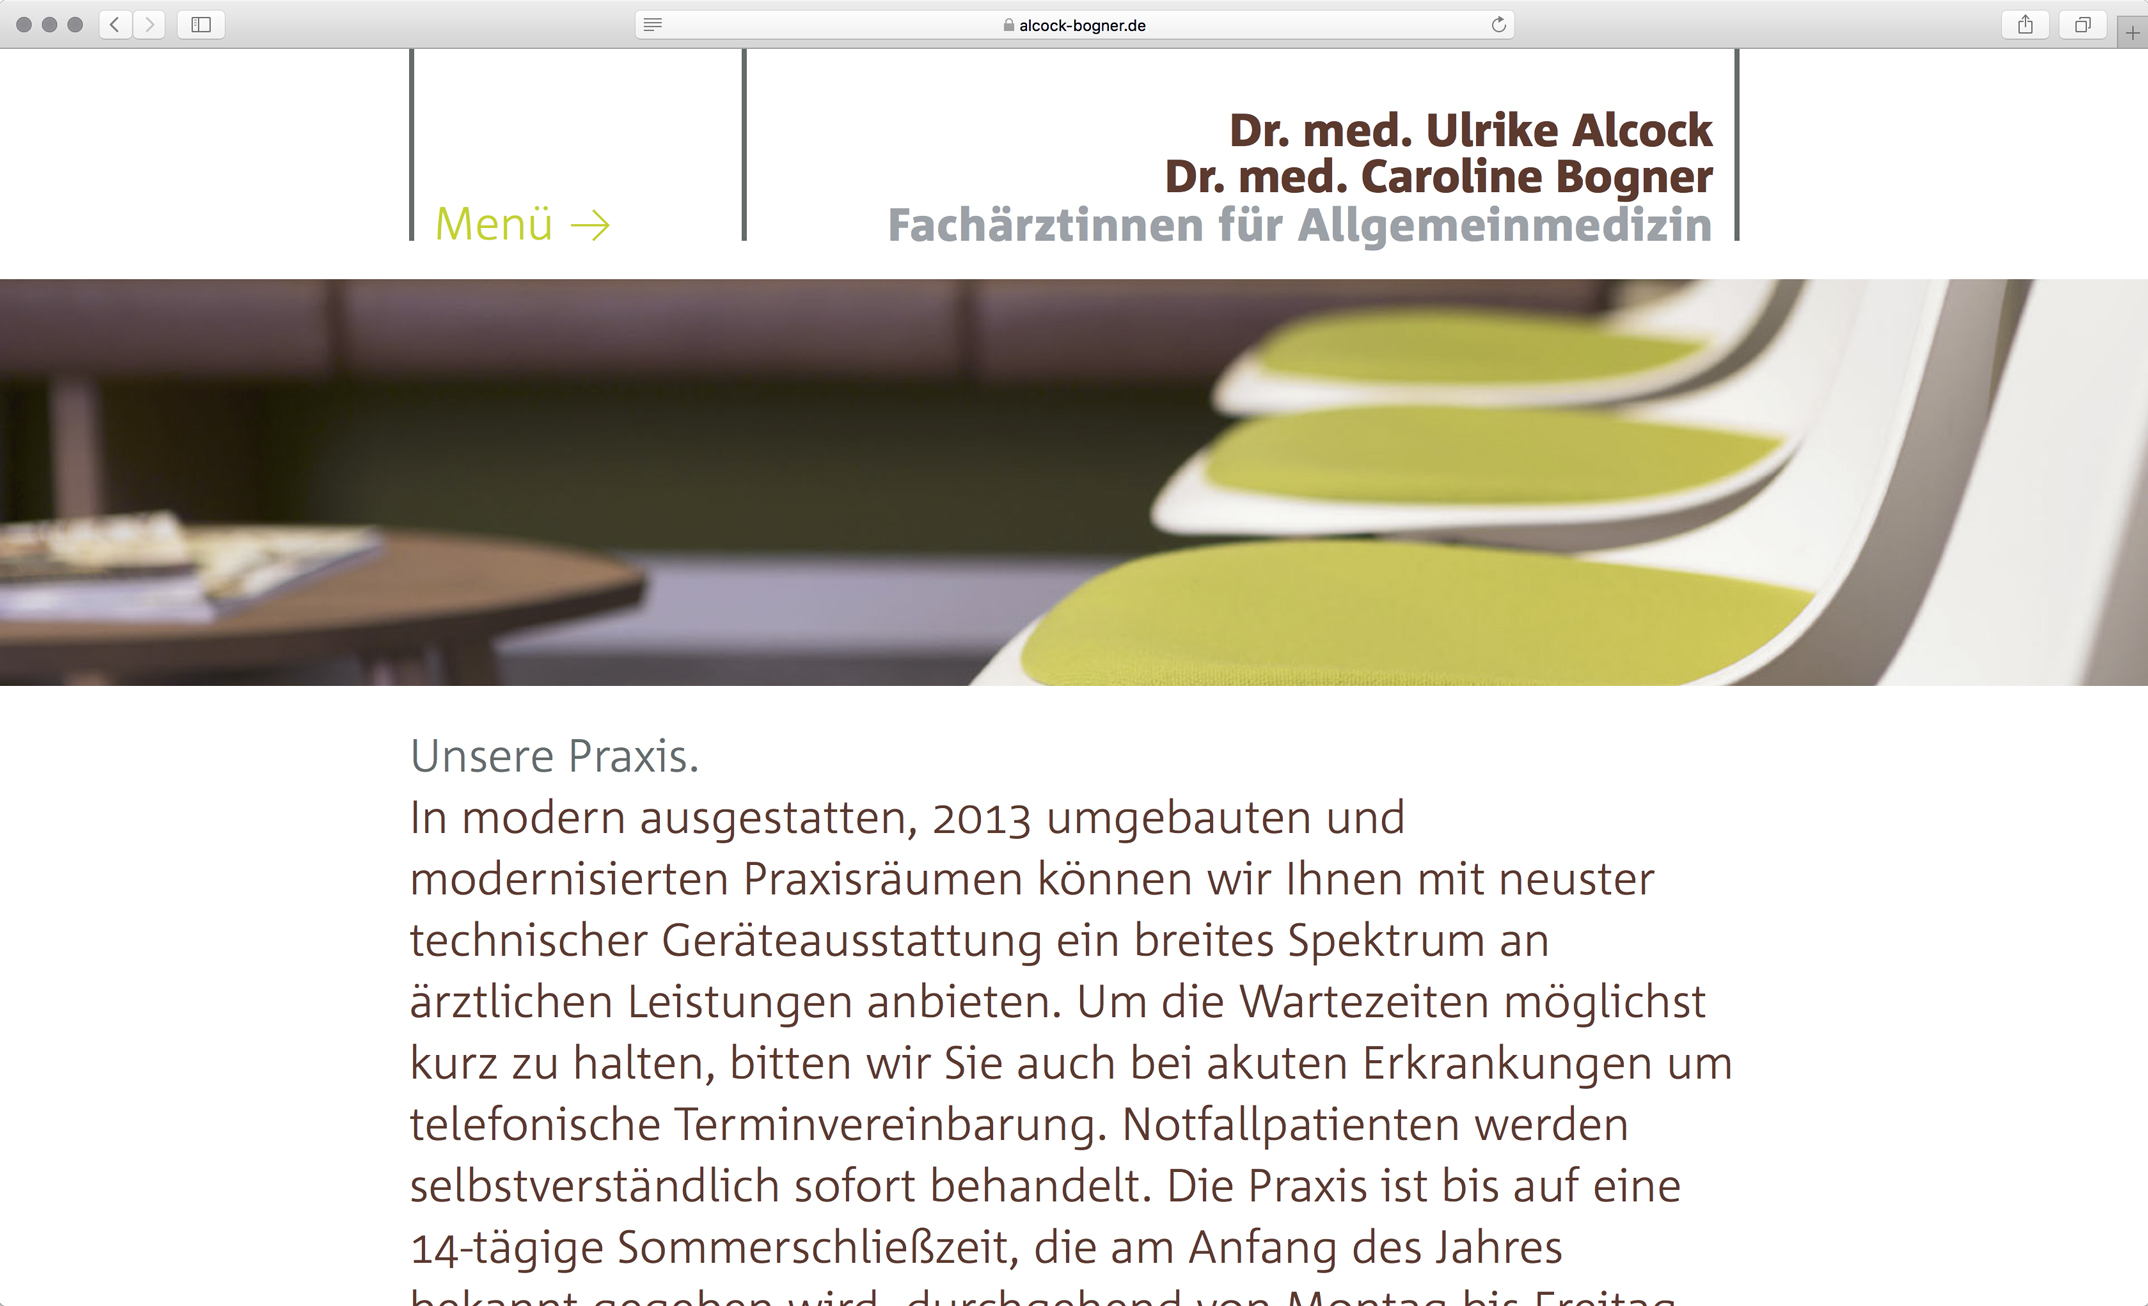 Unterseite, Vorstellung der Praxis – Corporate Website Dres. med. Alcock und Bogner Allgemeinmedizin München